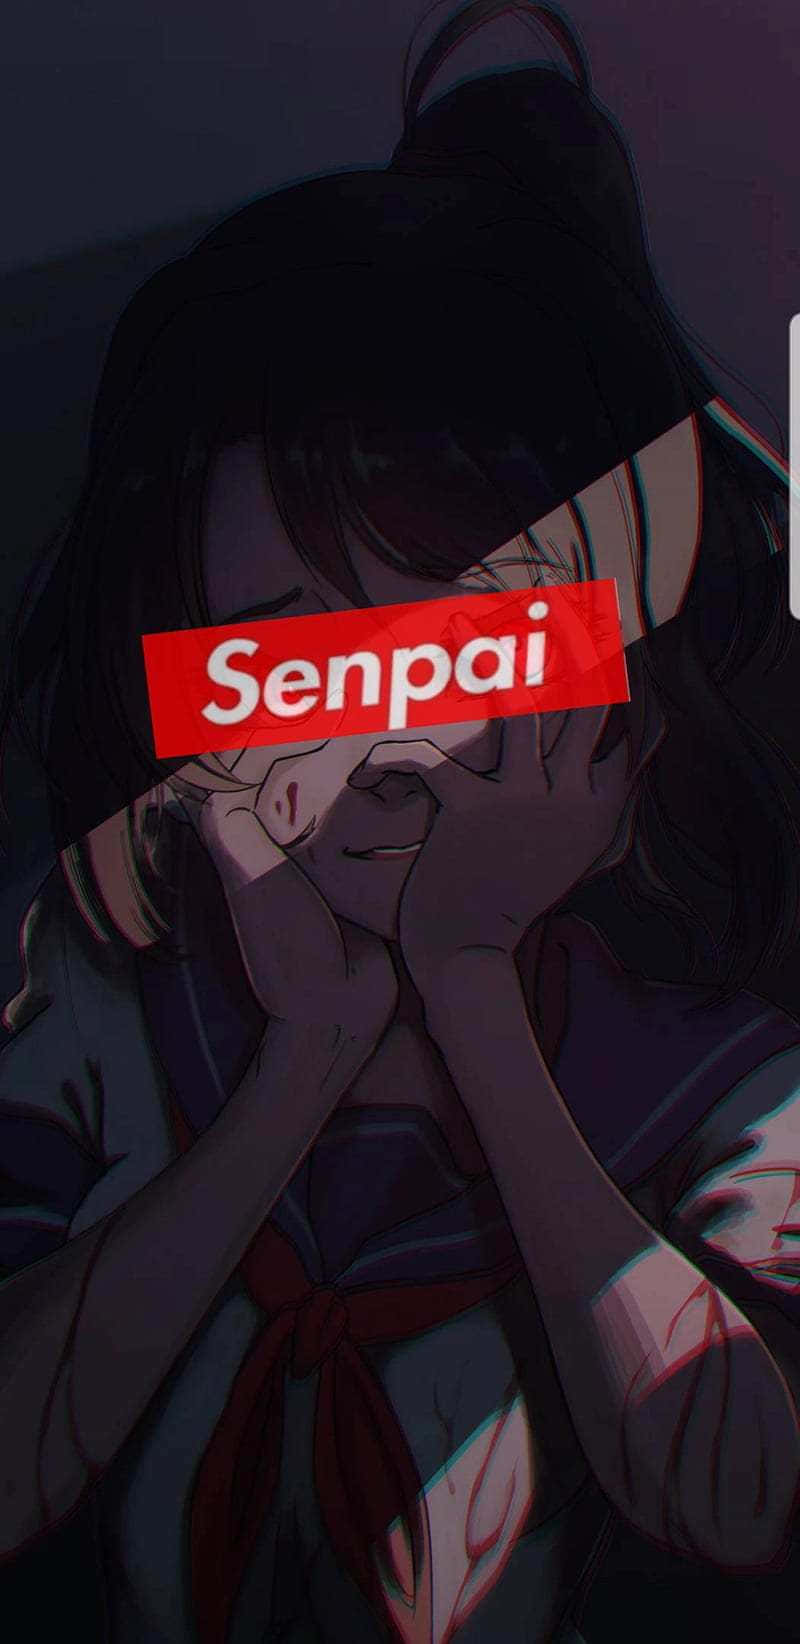 Blushing Anime Girl With Senpai Bar